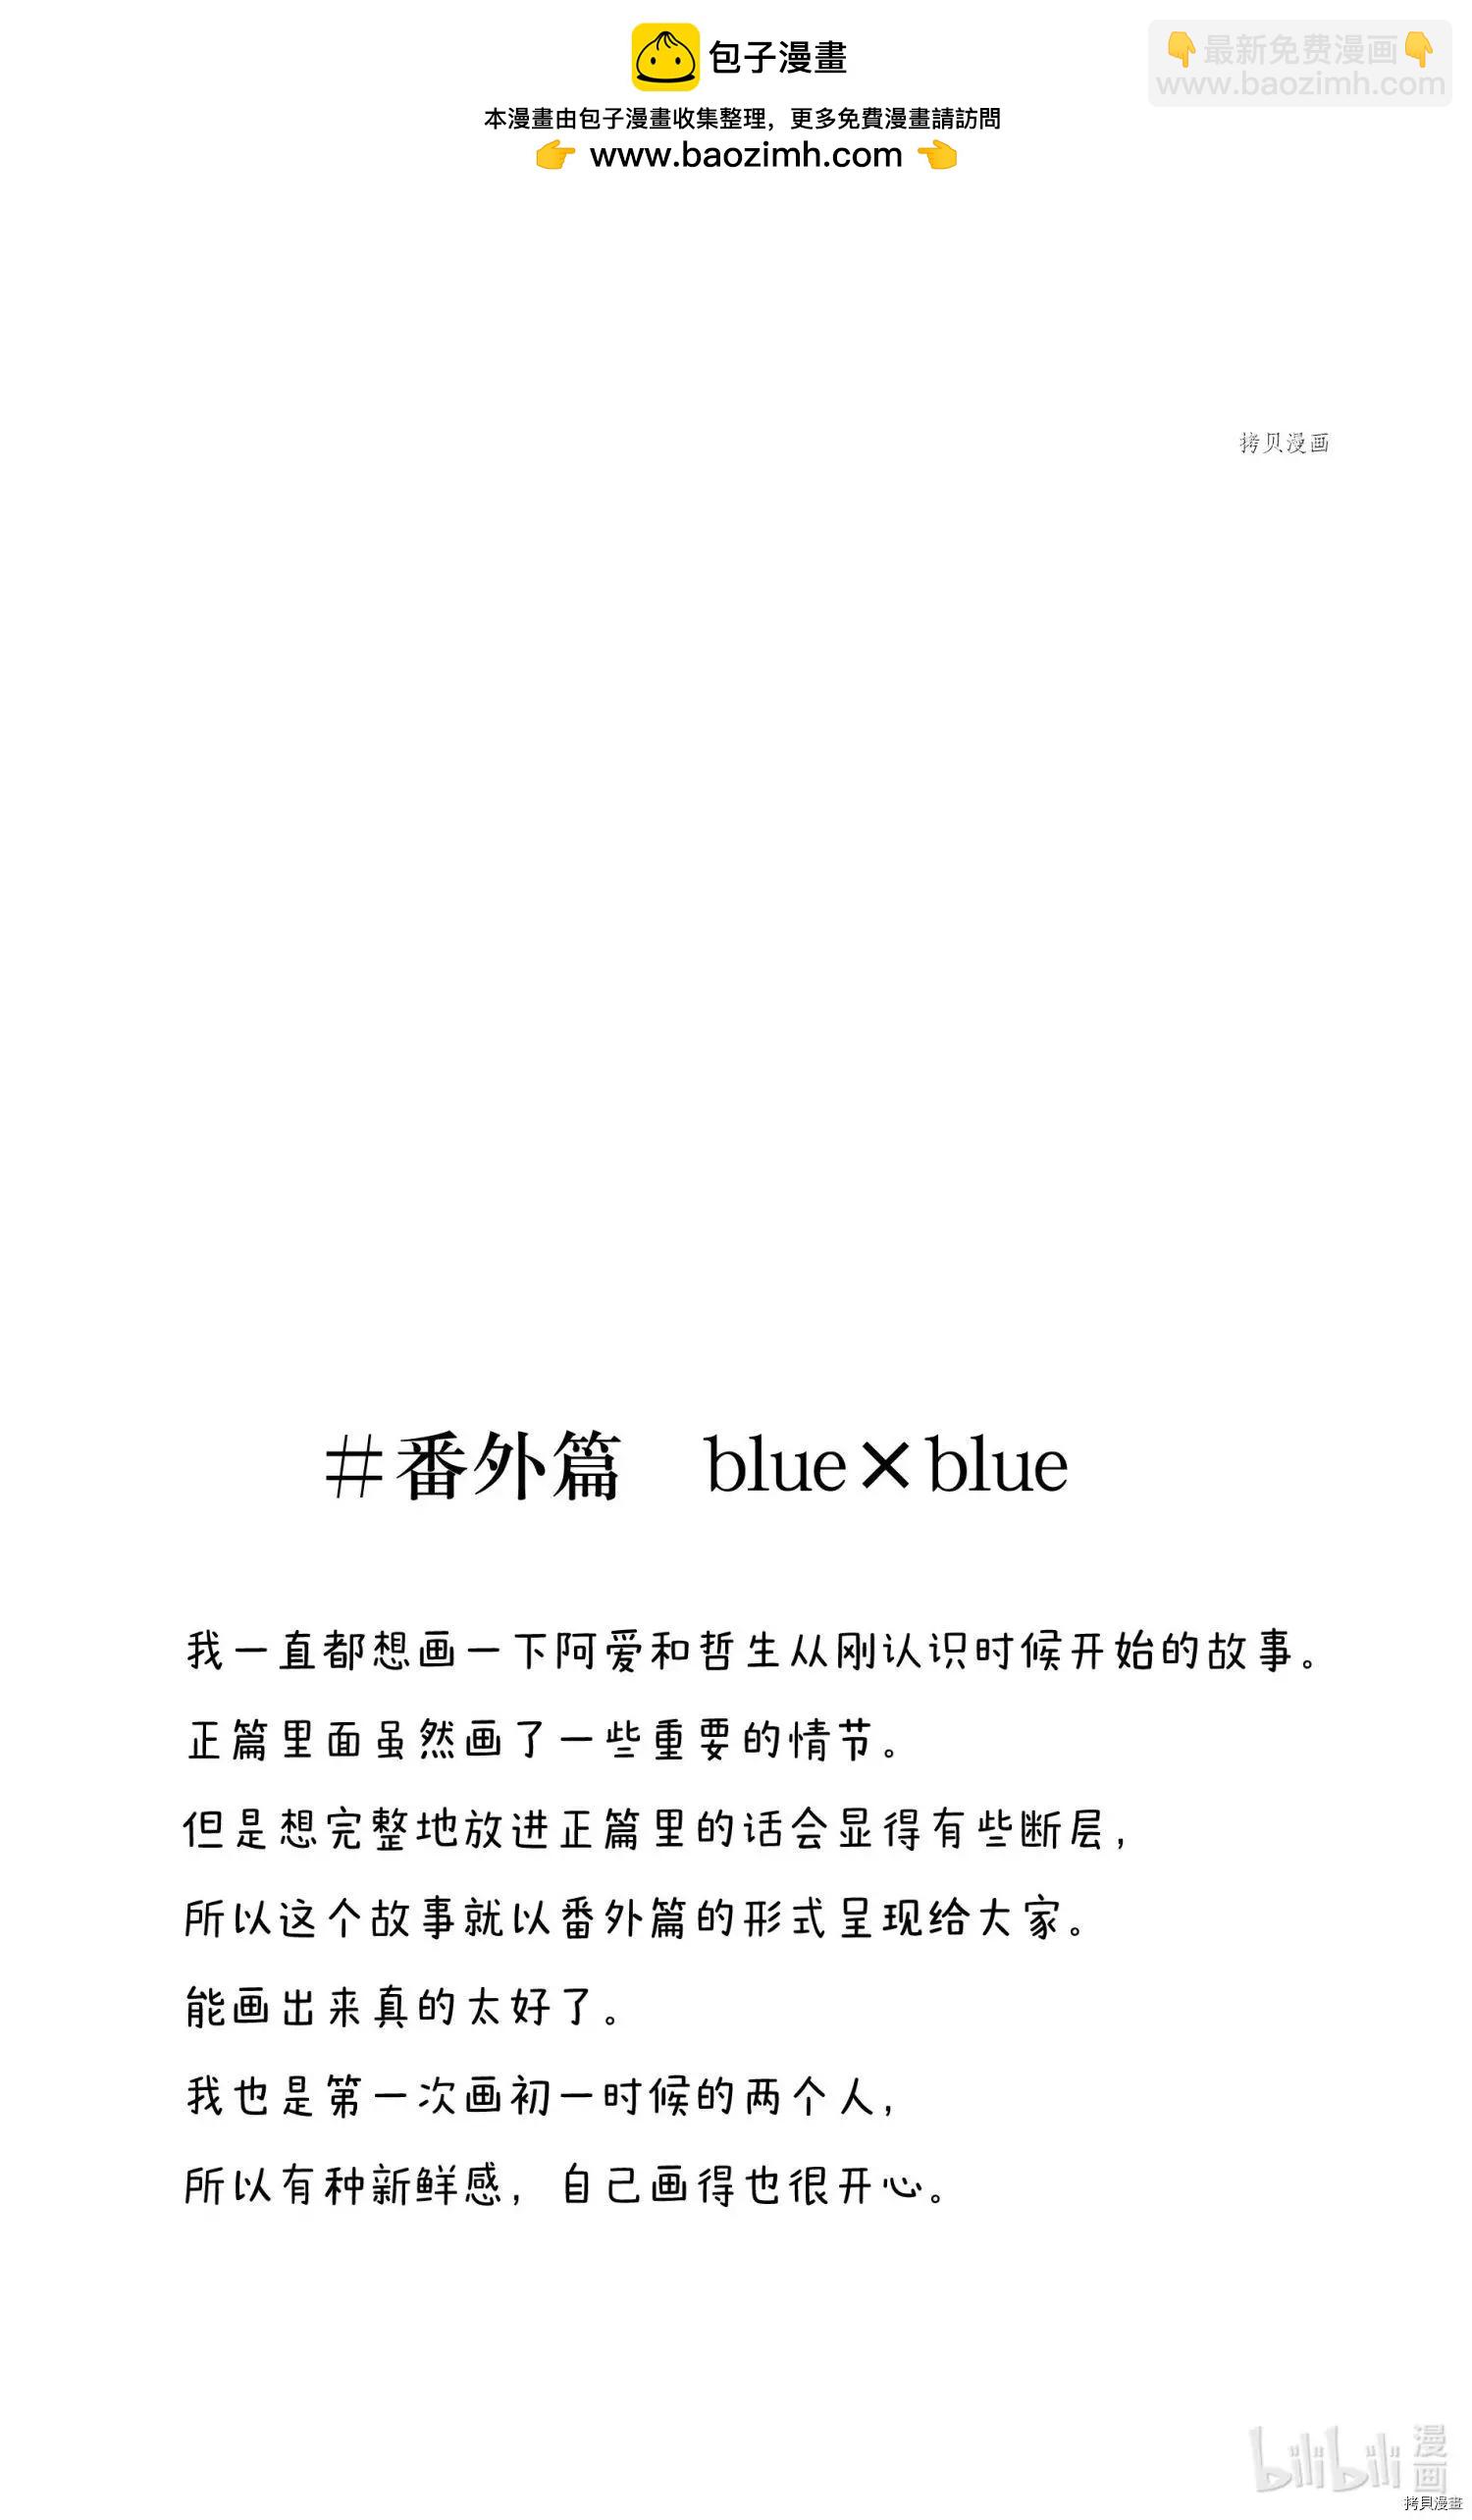 一弦定音 - 番外篇bluexblue - 2